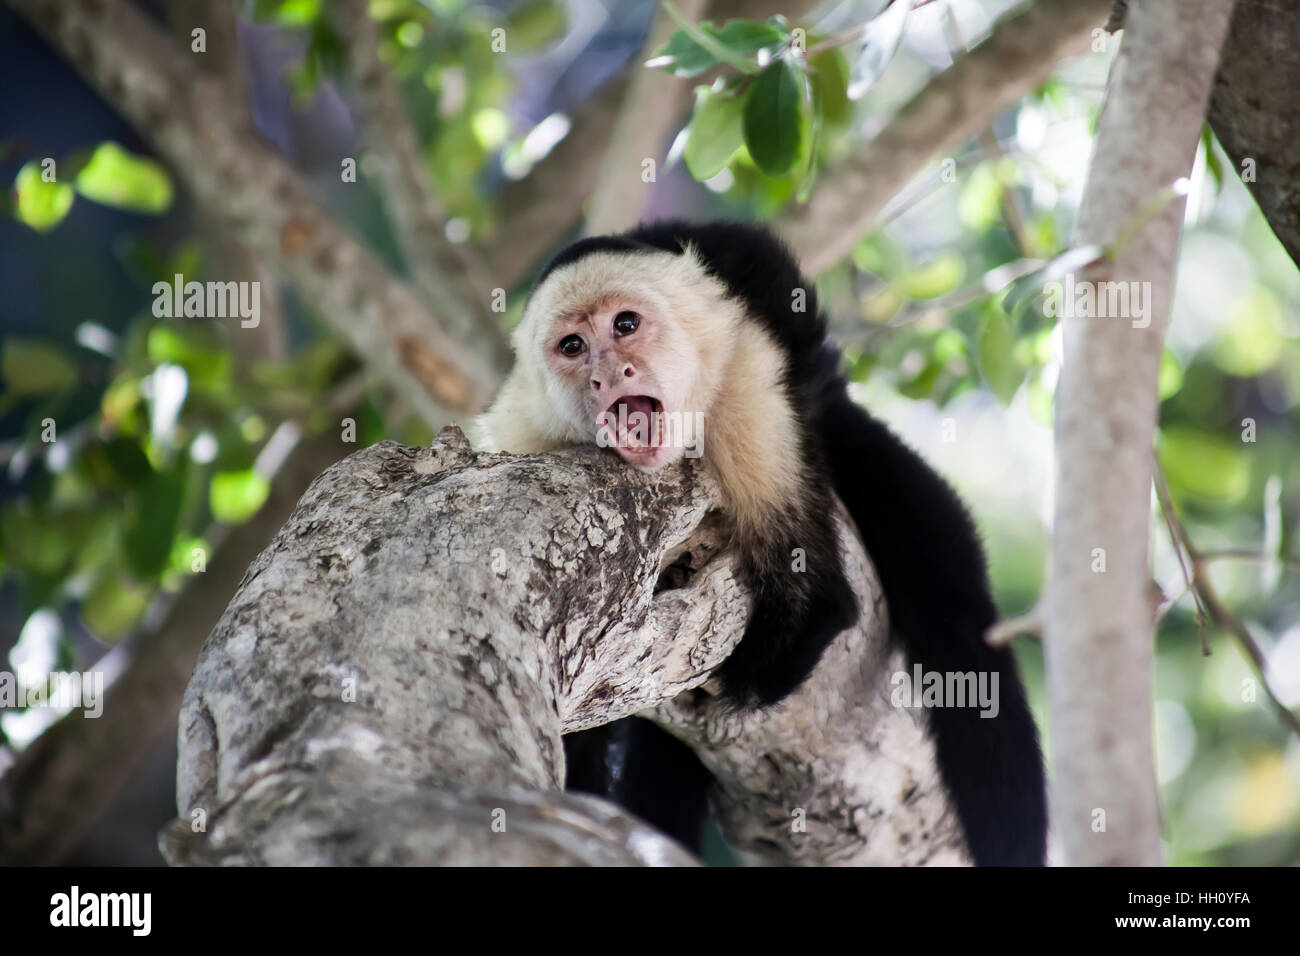 Aggressive Capuchin Monkey on a tree Stock Photo